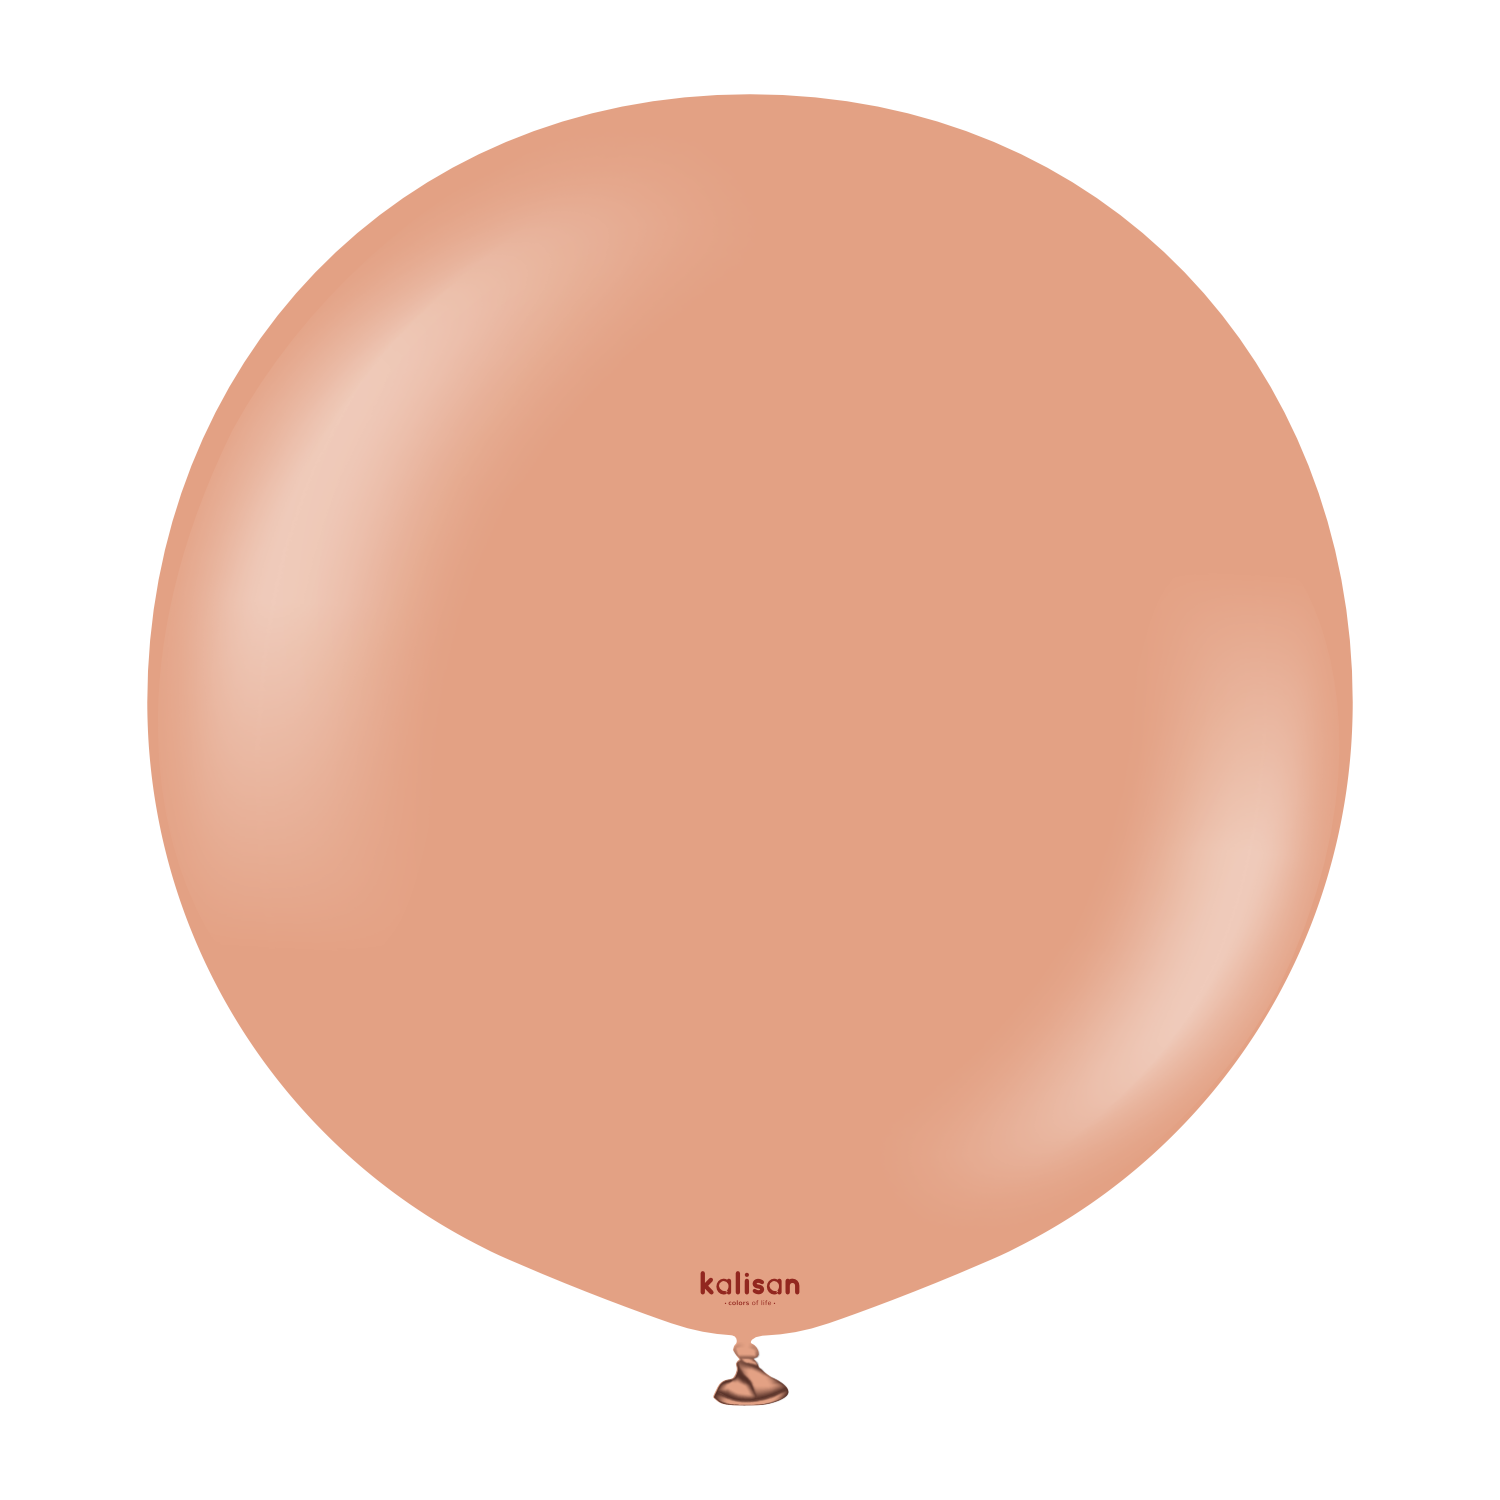 Premium lateksballong Kalisan i leirrose farge 